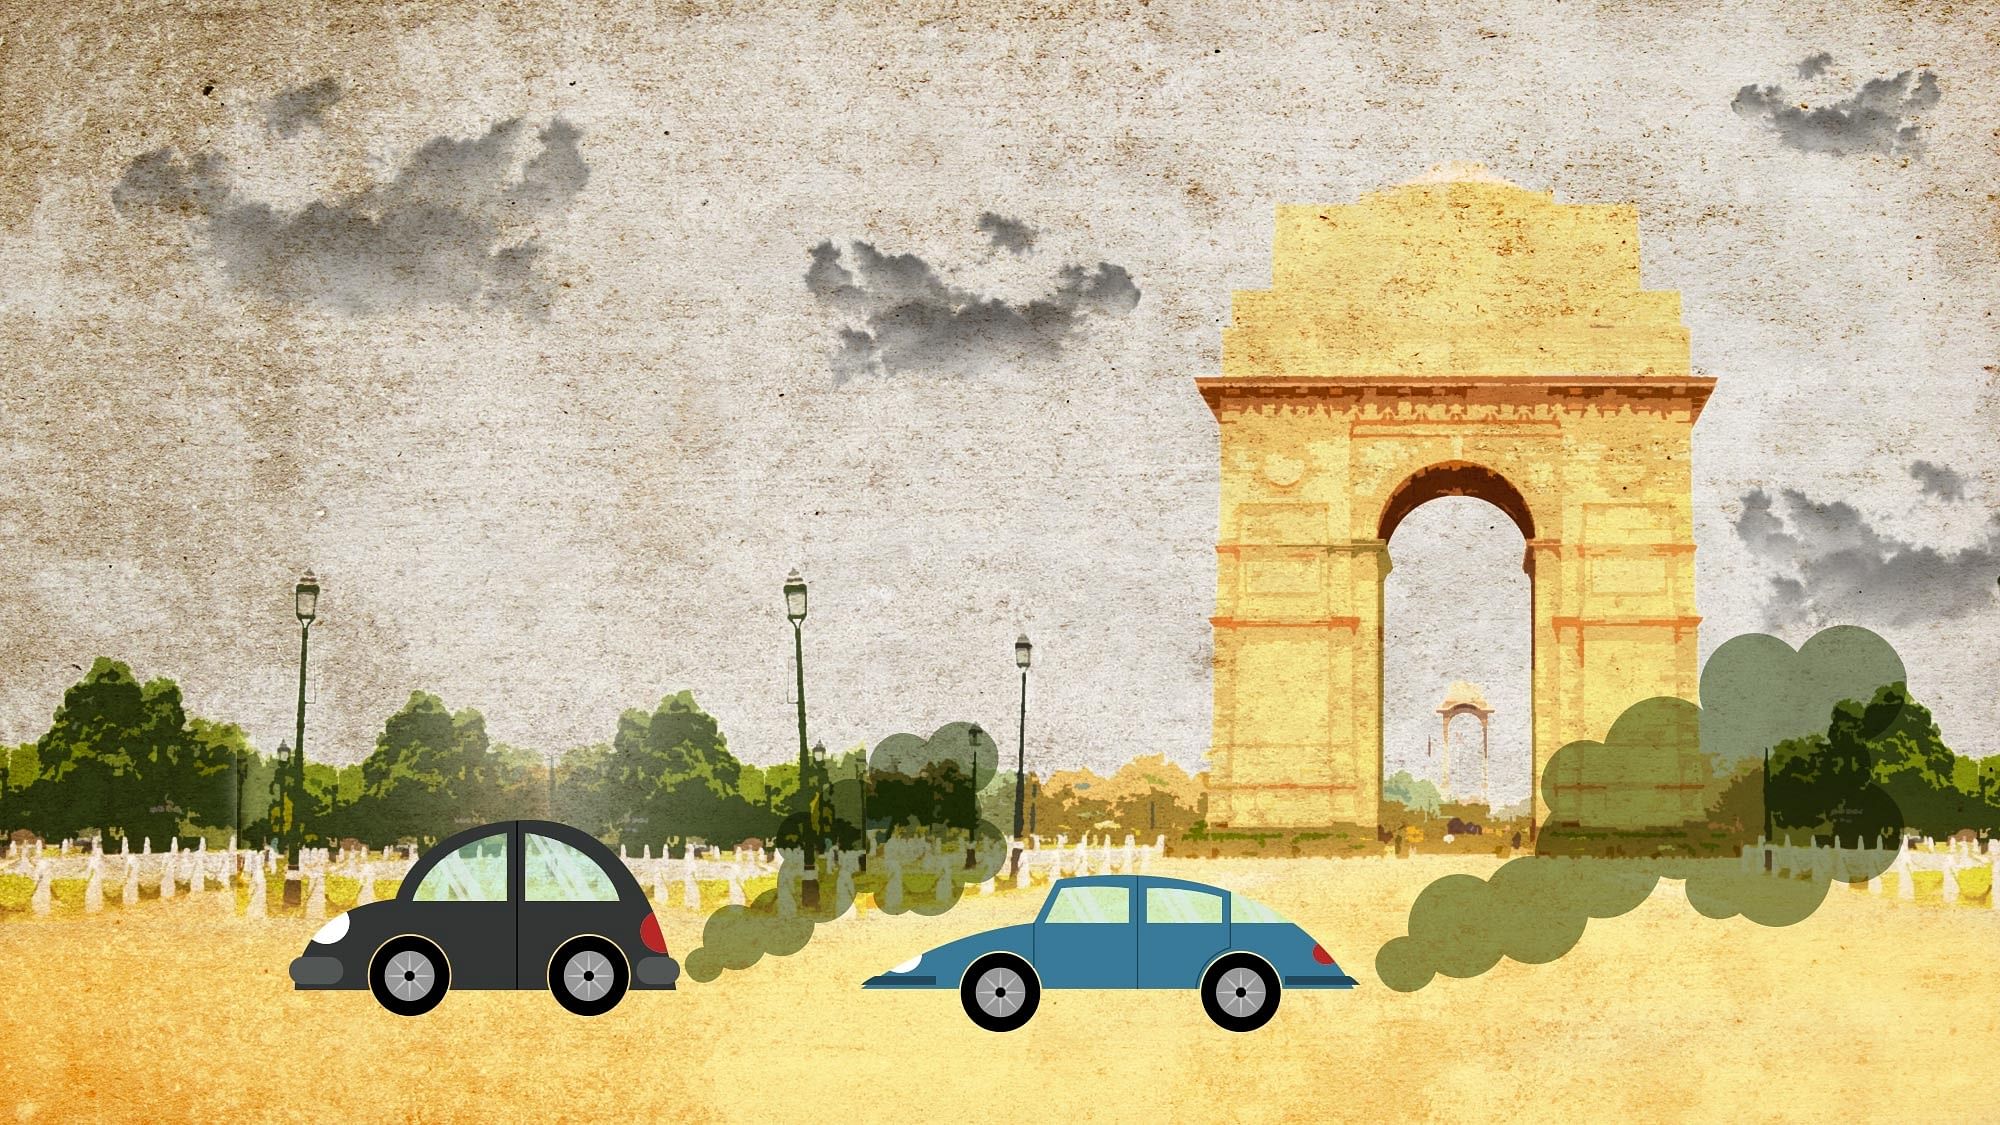 3 नवंबर के मुकाबले 4 नवंबर को दिल्ली में हवा की गुणवत्ता में सुधार देखने को मिला है.